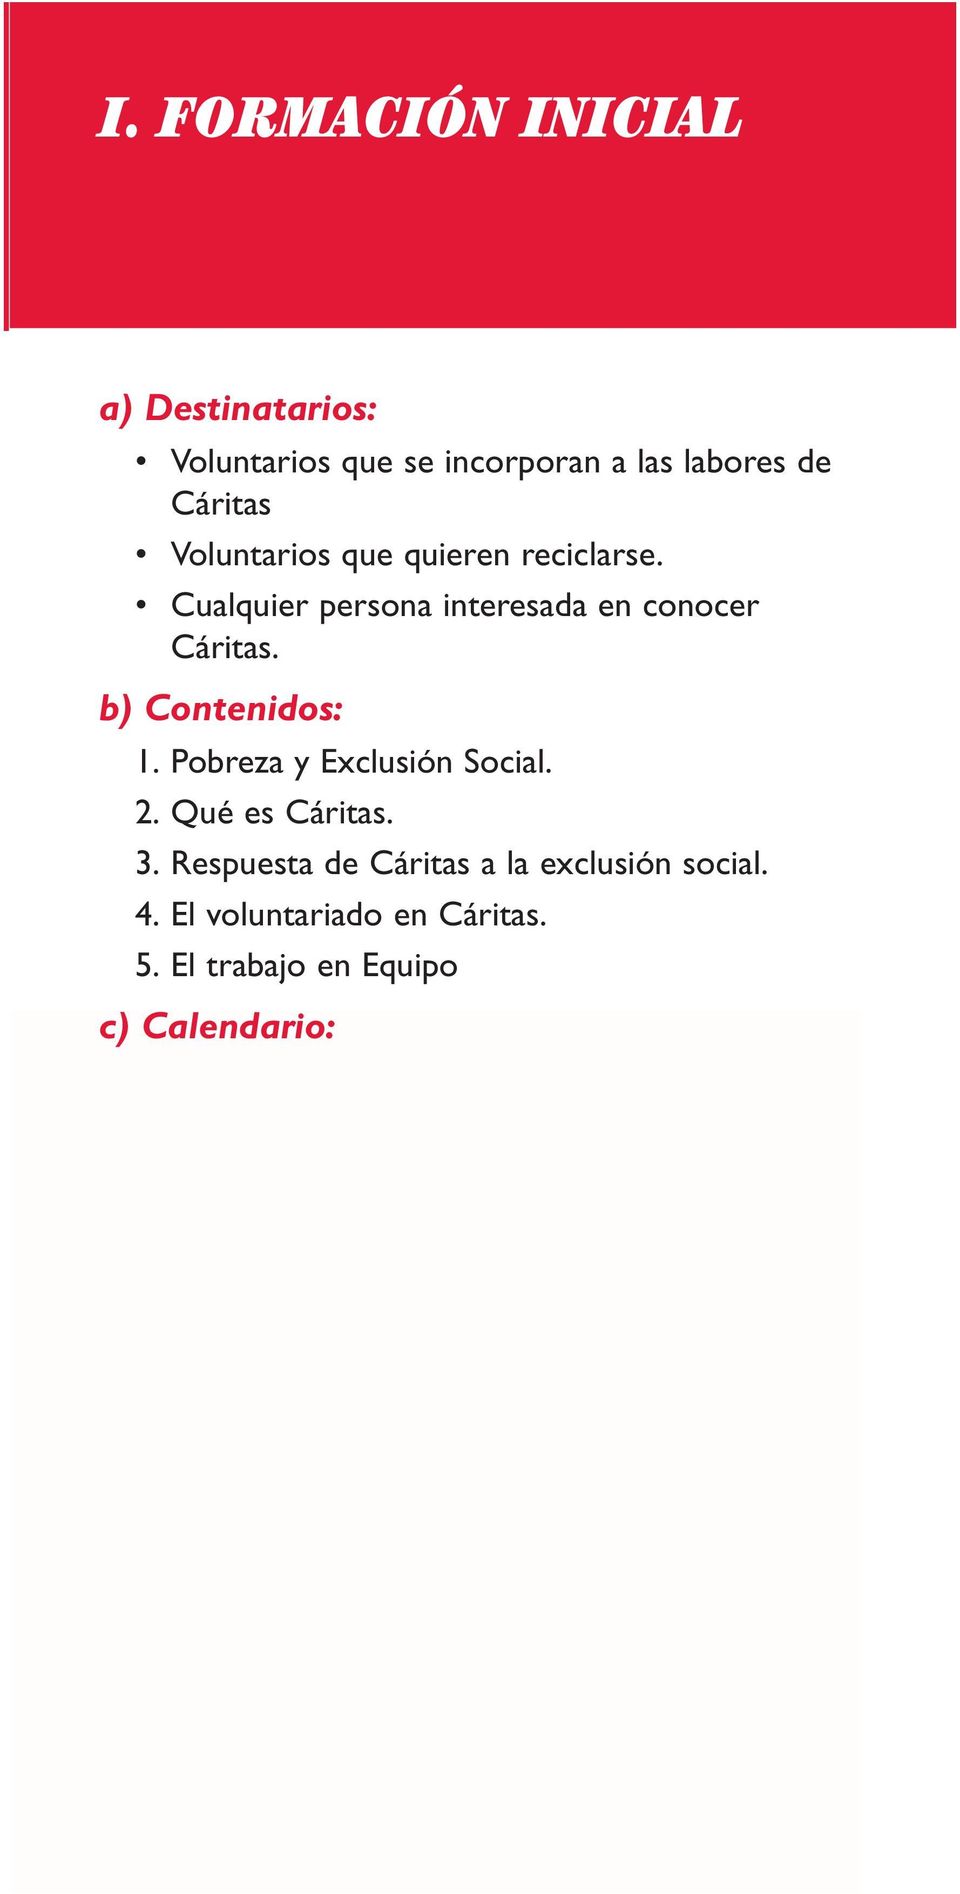 Respuesta de Cáritas a la exclusión social. 4. El voluntariado en Cáritas. 5.